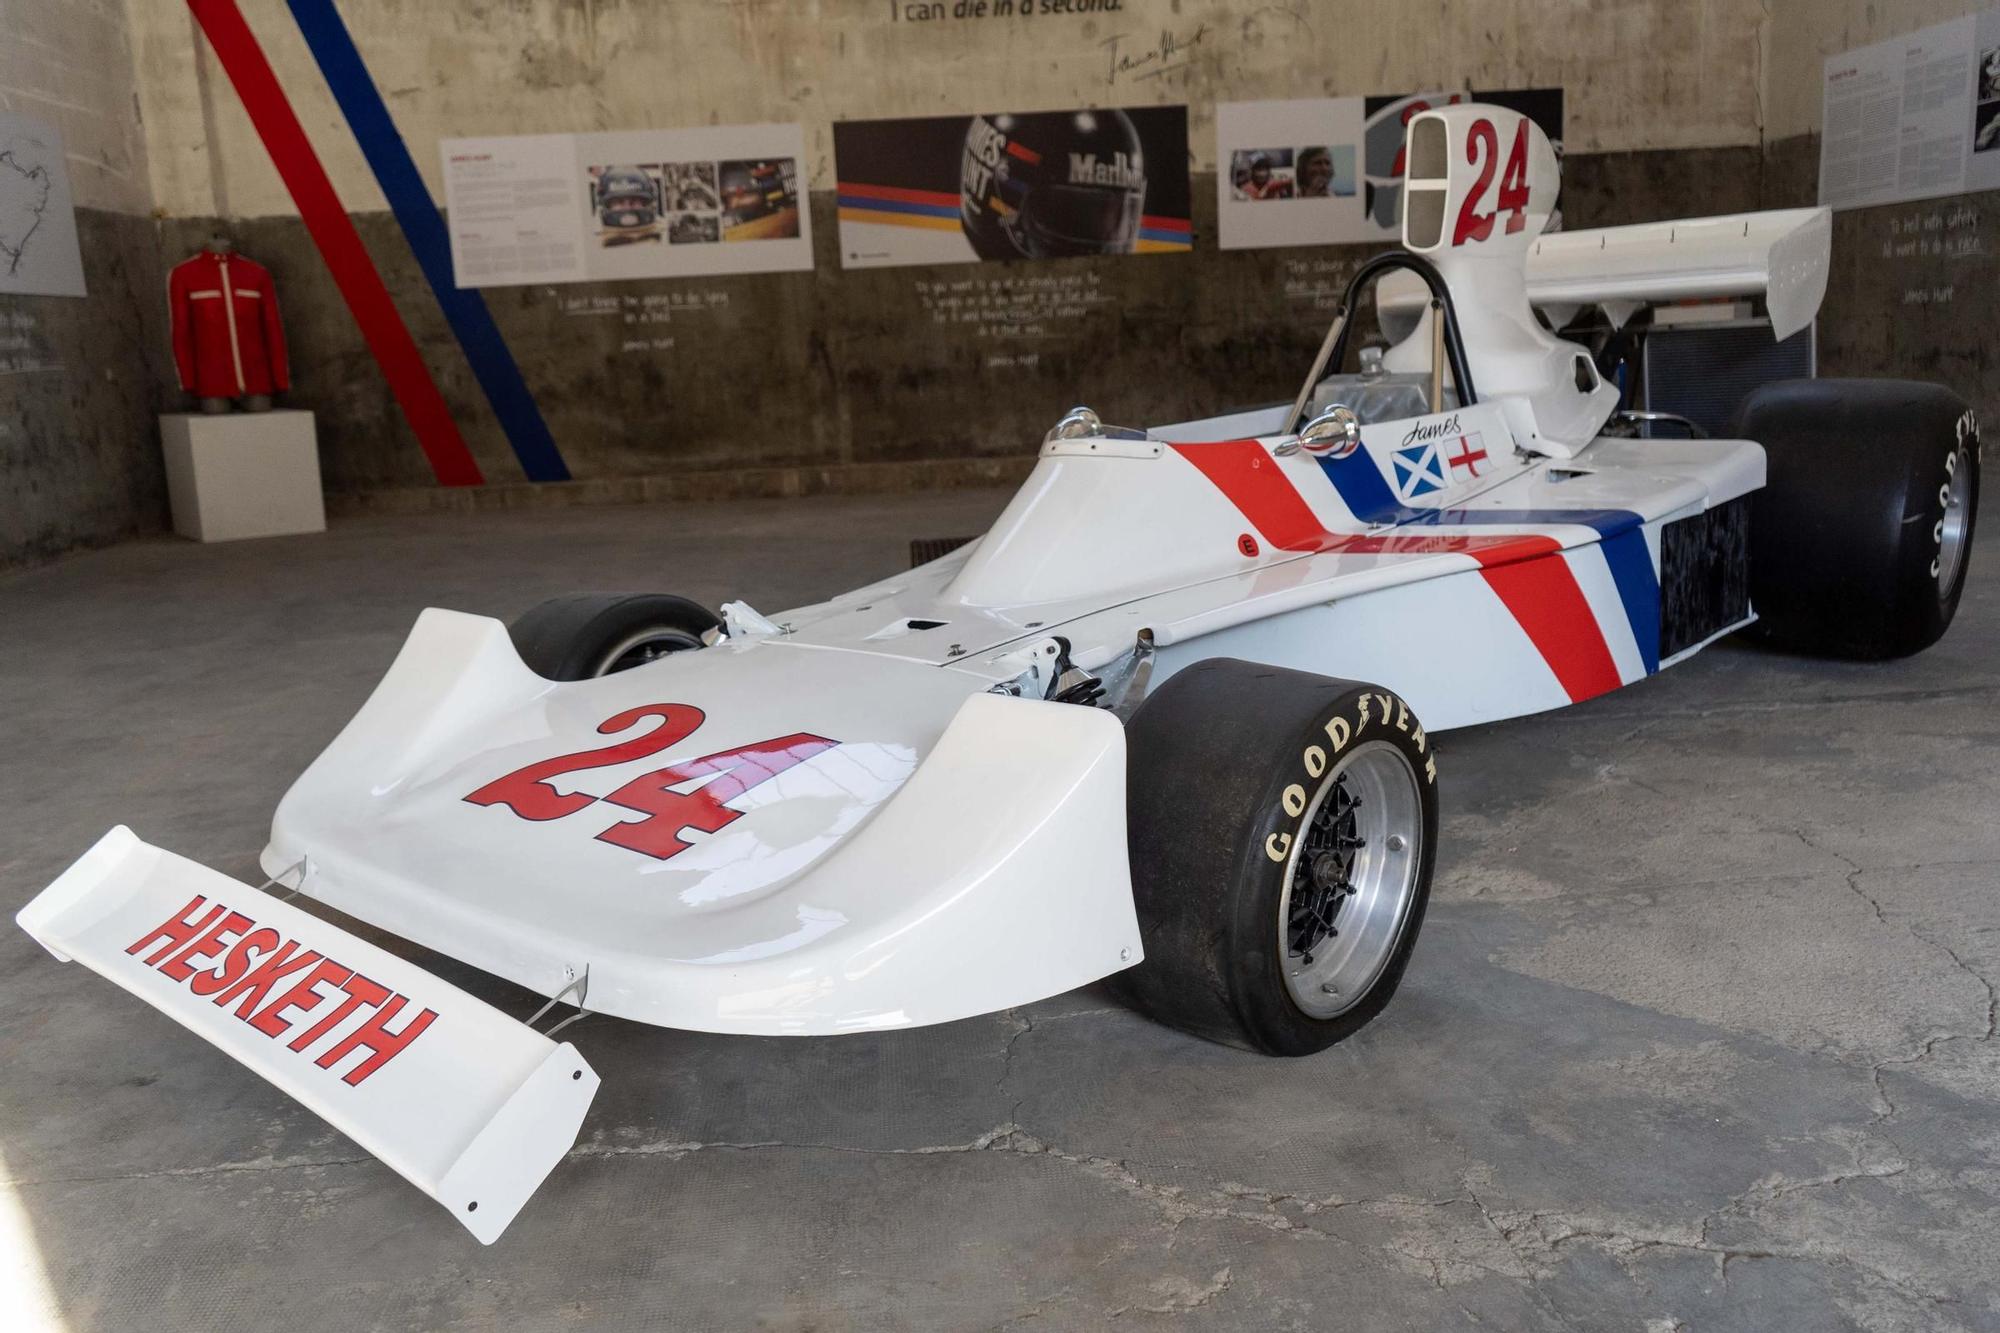 Imatges del bòlid Hesketh de Fórmula 1 que conduïa James Hunt, propietat de Miquel Liso a Manresa